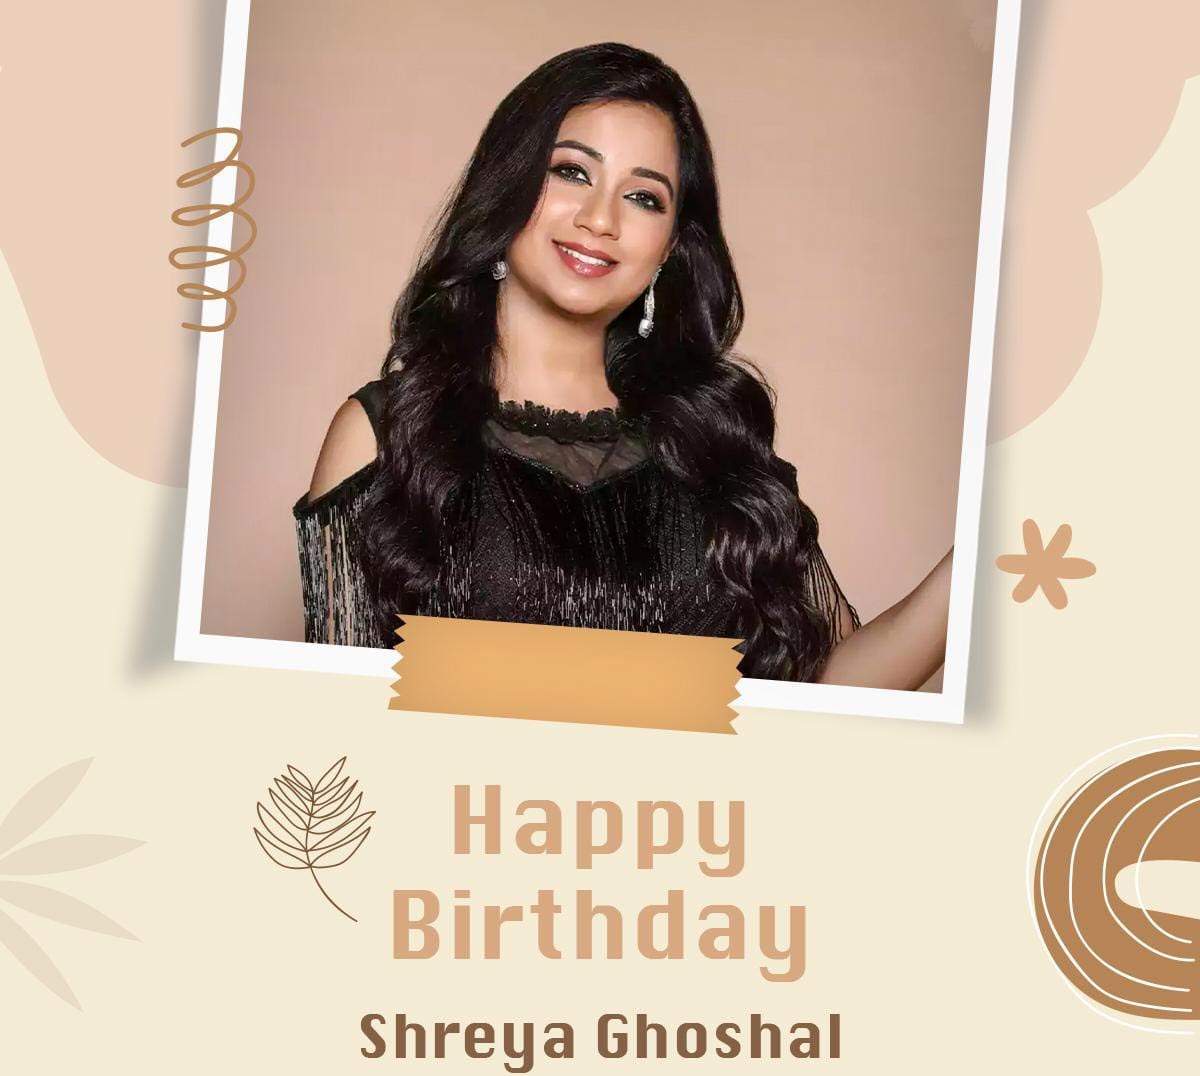 Happy Birthday to Shreya Ghoshal 